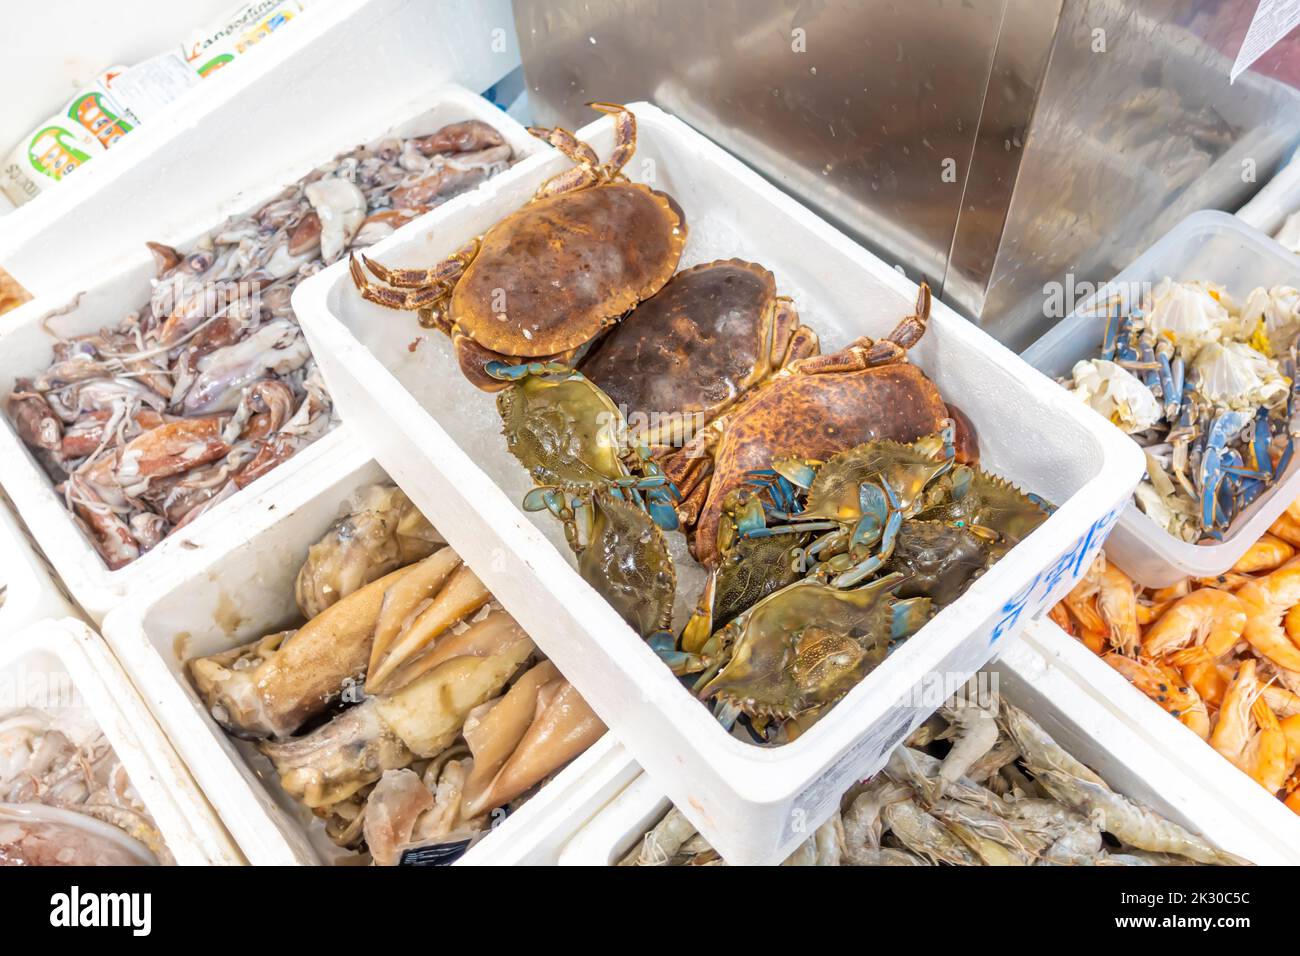 Callinectes sapidus die blaue Krabbe, atlantische blaue Krabbe, oder auf der Region als die blaue Krabbe der chesapeake, die im Mercado de Los Mostenses, Madrid, Spanien, verkauft wird Stockfoto